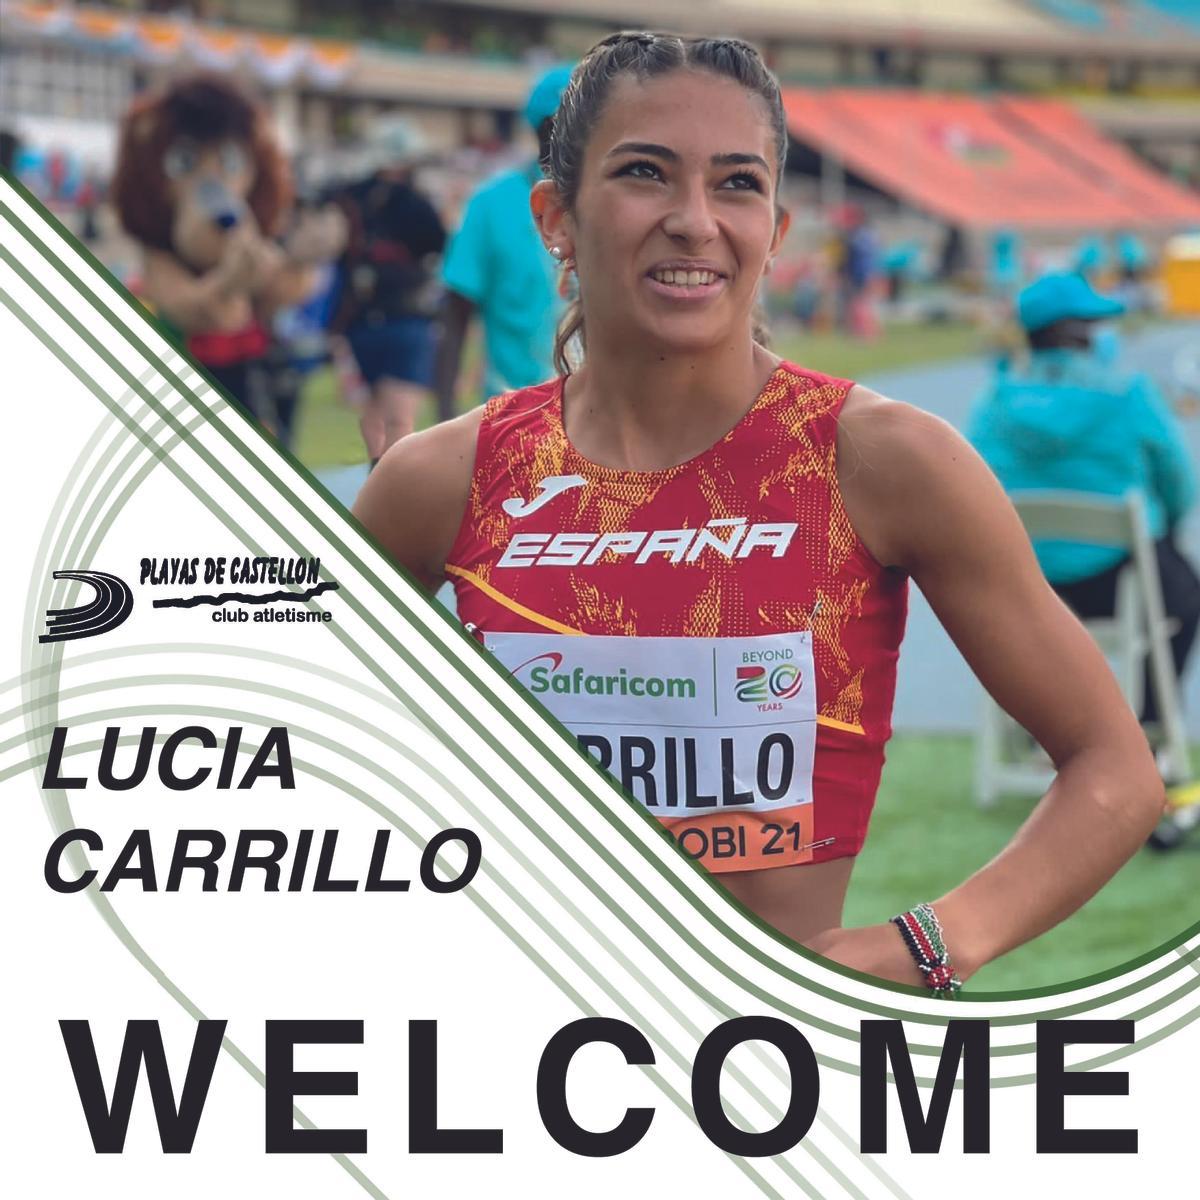 La velocista Lucía Carrillo demostró una gran progesión durante la temporada pasada.